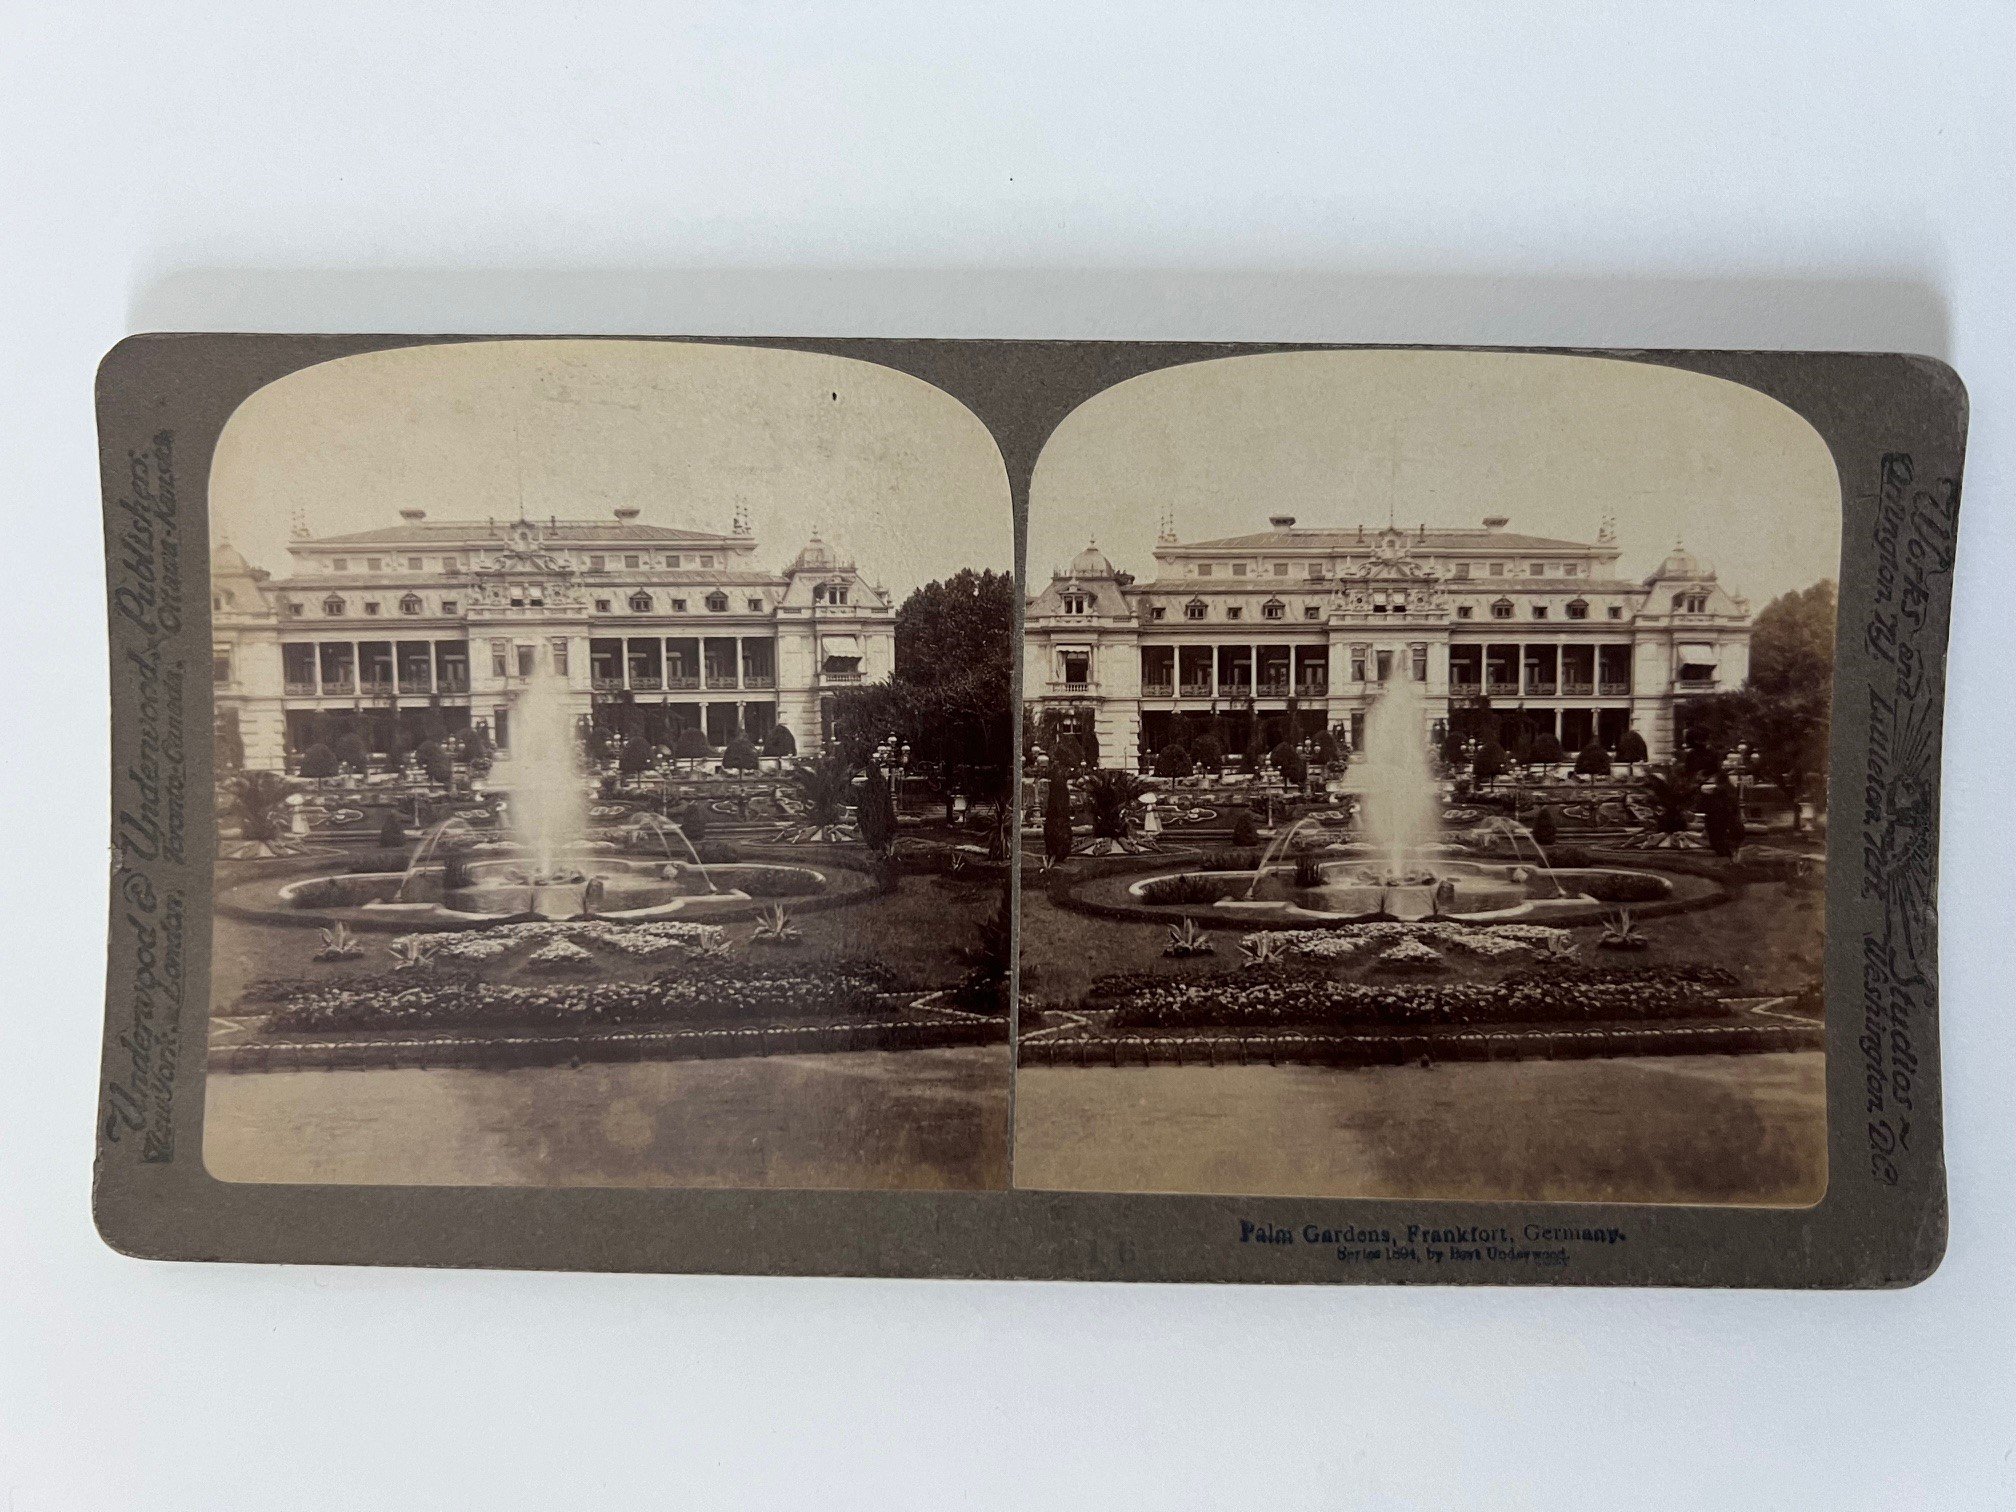 Stereobild, Underwood & Underwood, Frankfurt, Palm Gardens, ca. 1910. (Taunus-Rhein-Main - Regionalgeschichtliche Sammlung Dr. Stefan Naas CC BY-NC-SA)